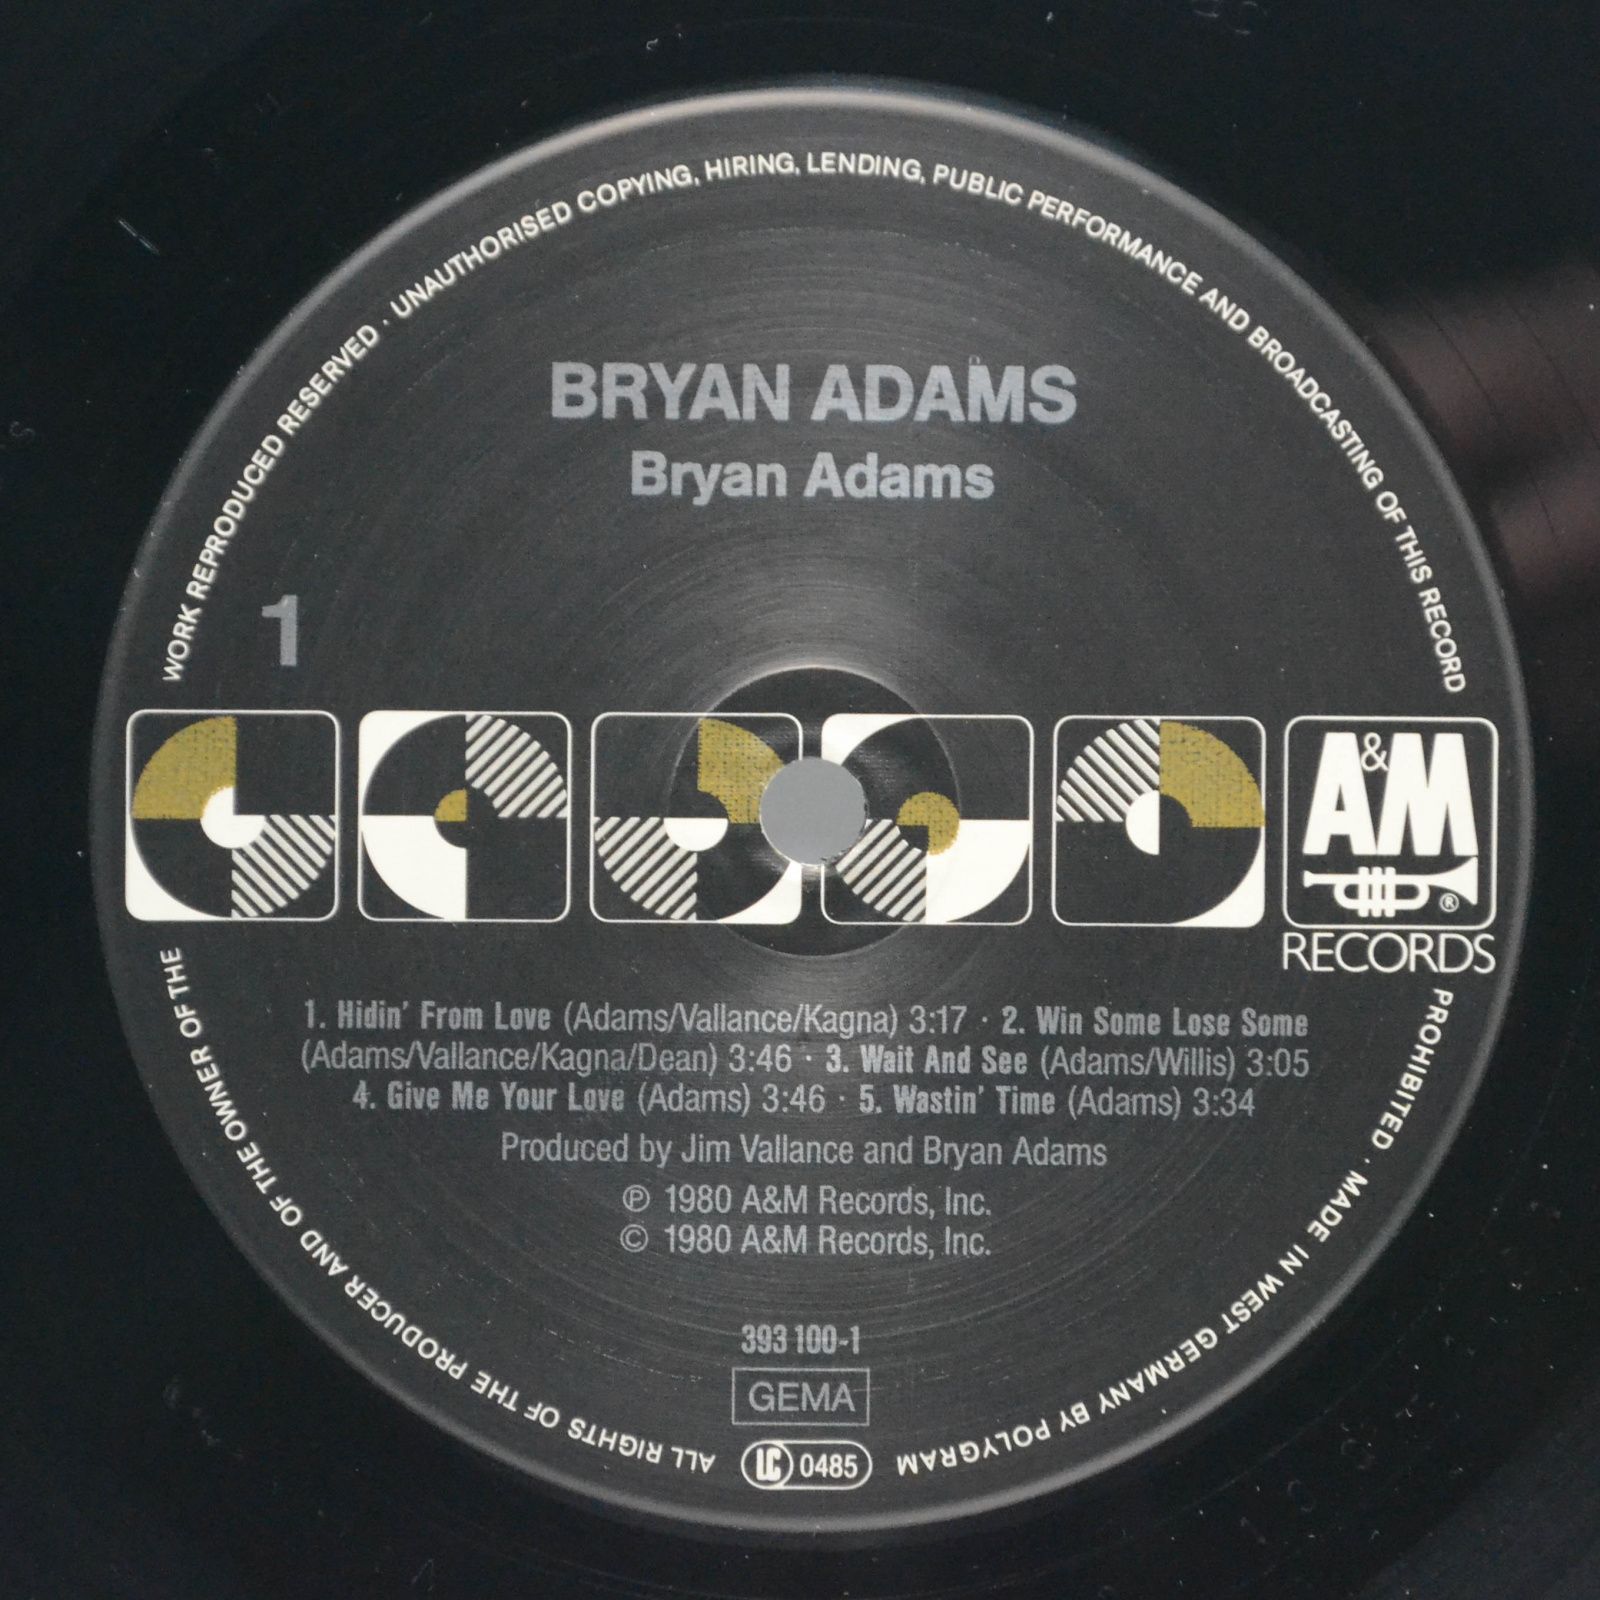 Bryan Adams — Bryan Adams, 1980